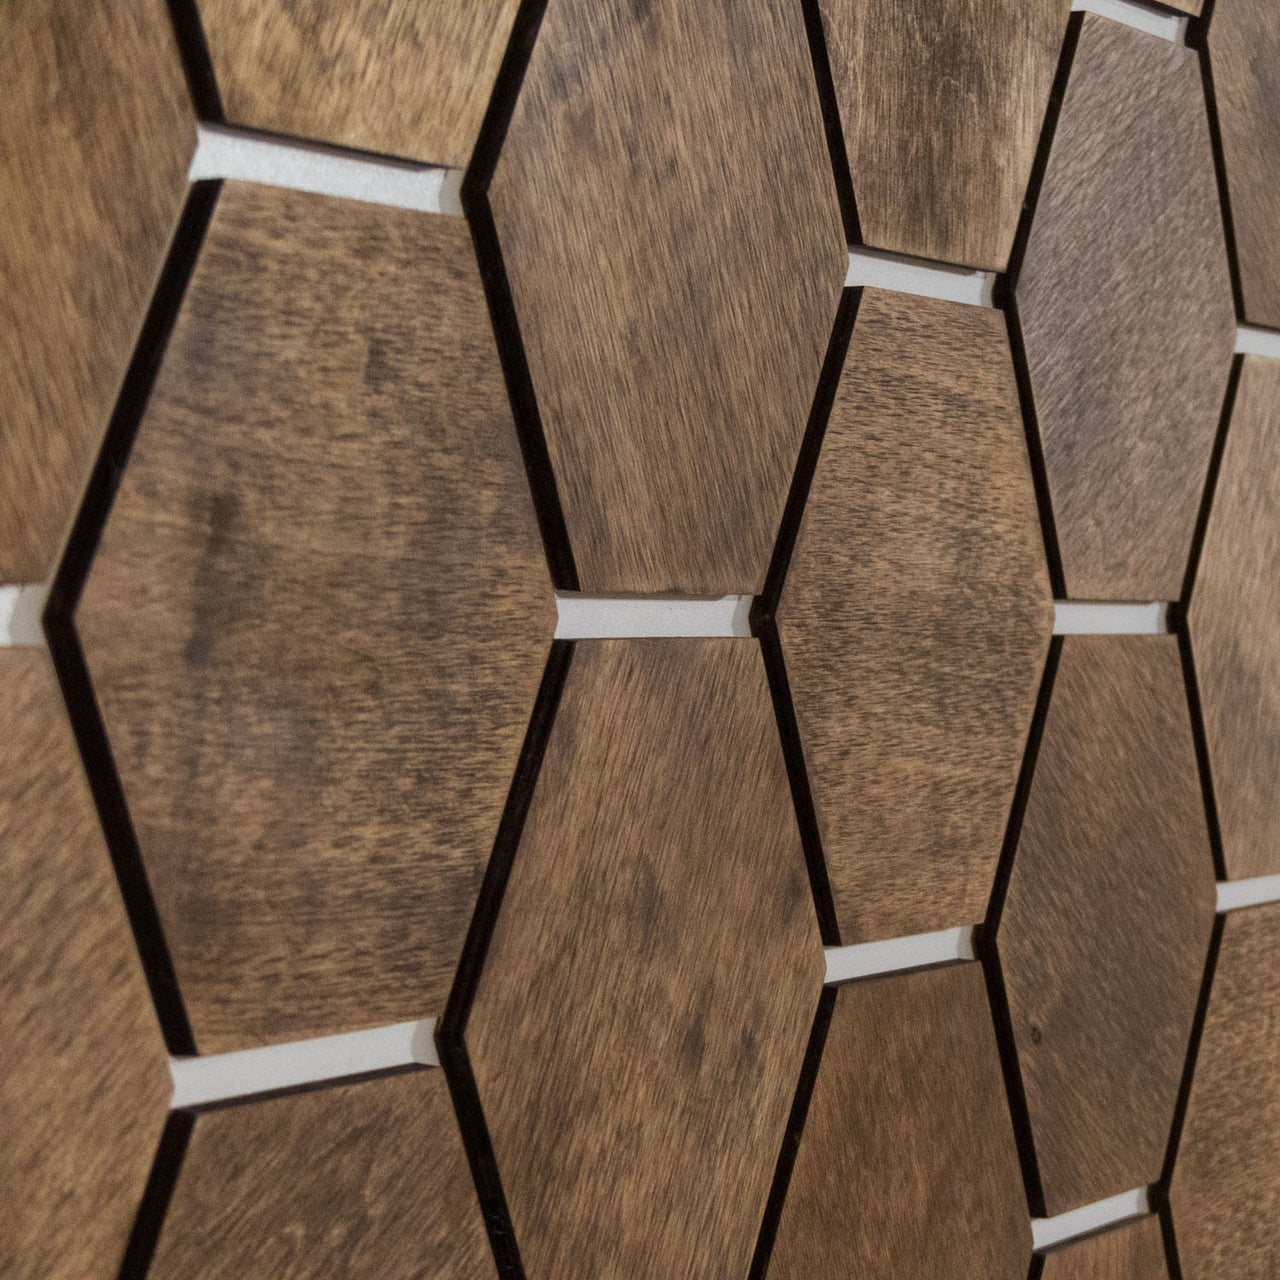 Hexagonal Wooden Wall Panels [32pcs] Birch Medium